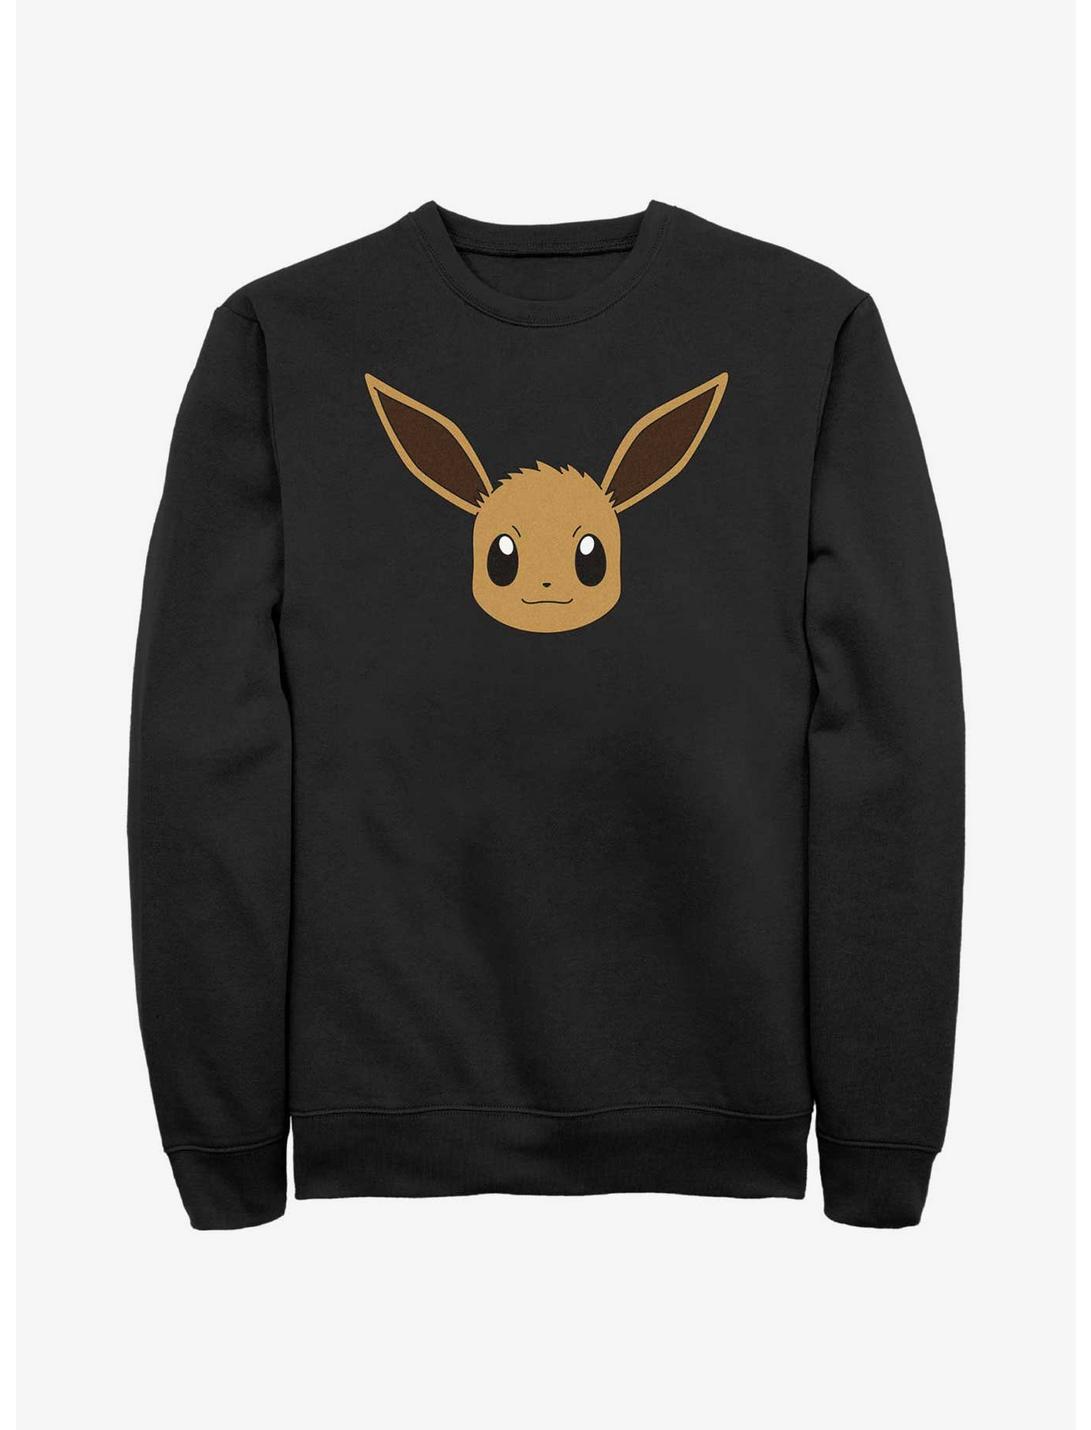 Hot Topic Pokemon Eevee Face Sweatshirt